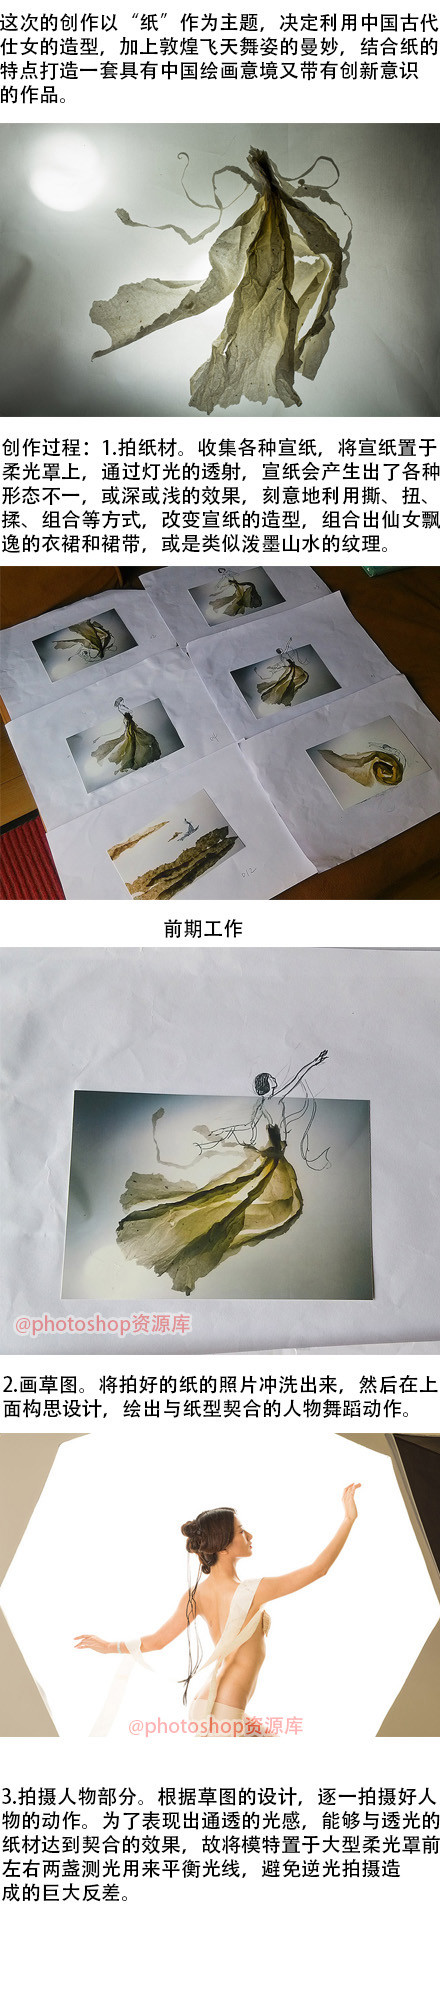 巧用photoshop創意中國風作品《紙》的打造過程 三聯